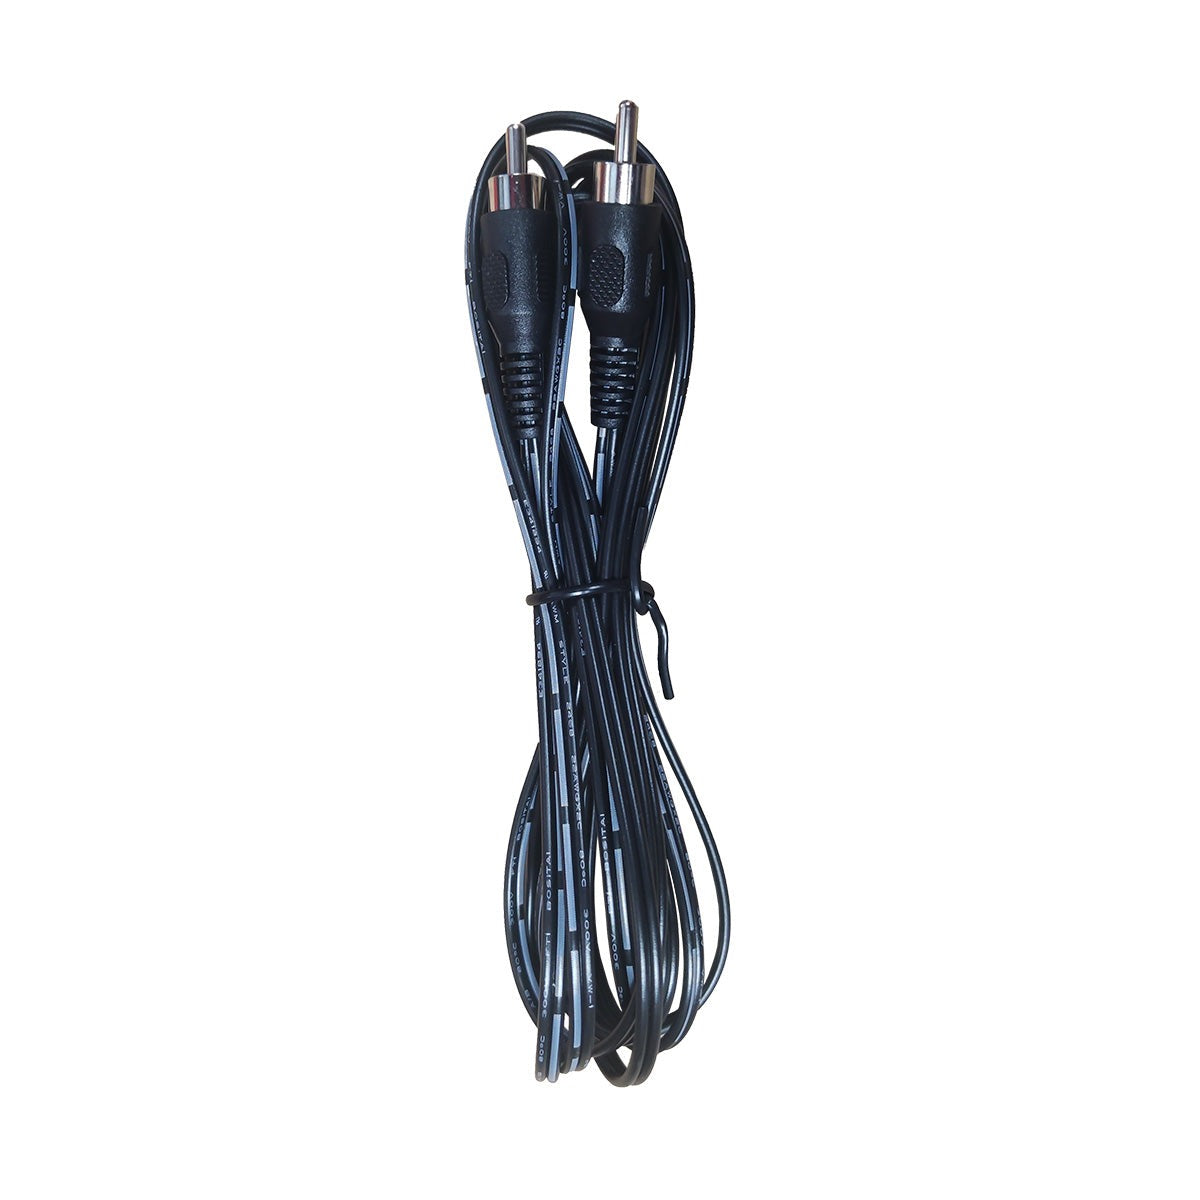 VULKKANO A4/A4 ARC-Kabel 3 Meter